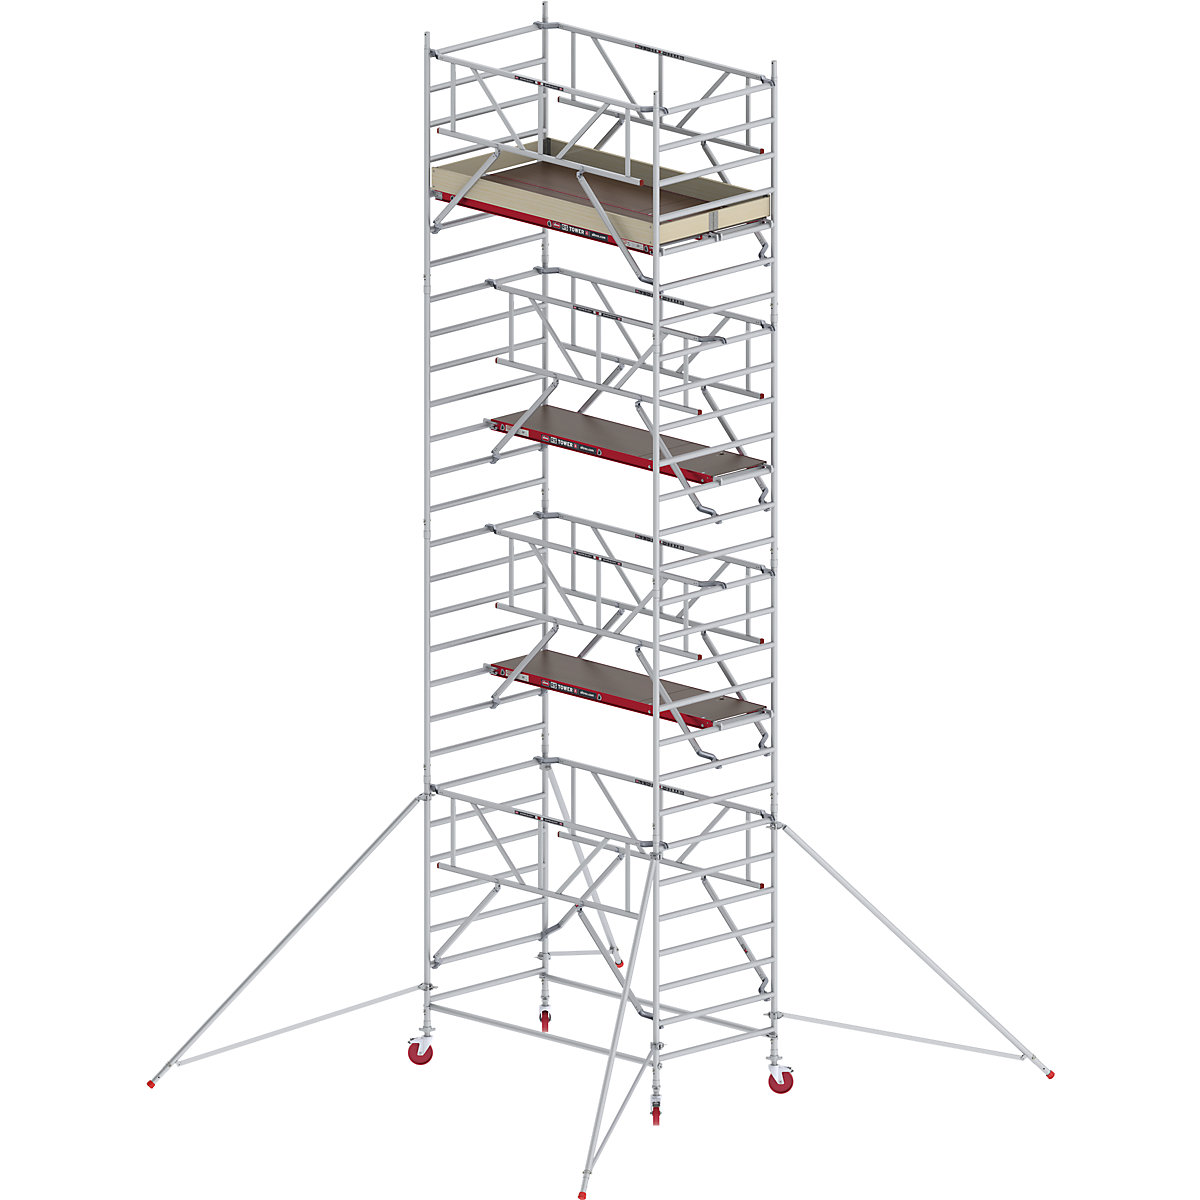 Fahrgerüst RS TOWER 42 breit mit Safe-Quick® Altrex, Holzplattform, Länge 1,85 m, Arbeitshöhe 9,20 m